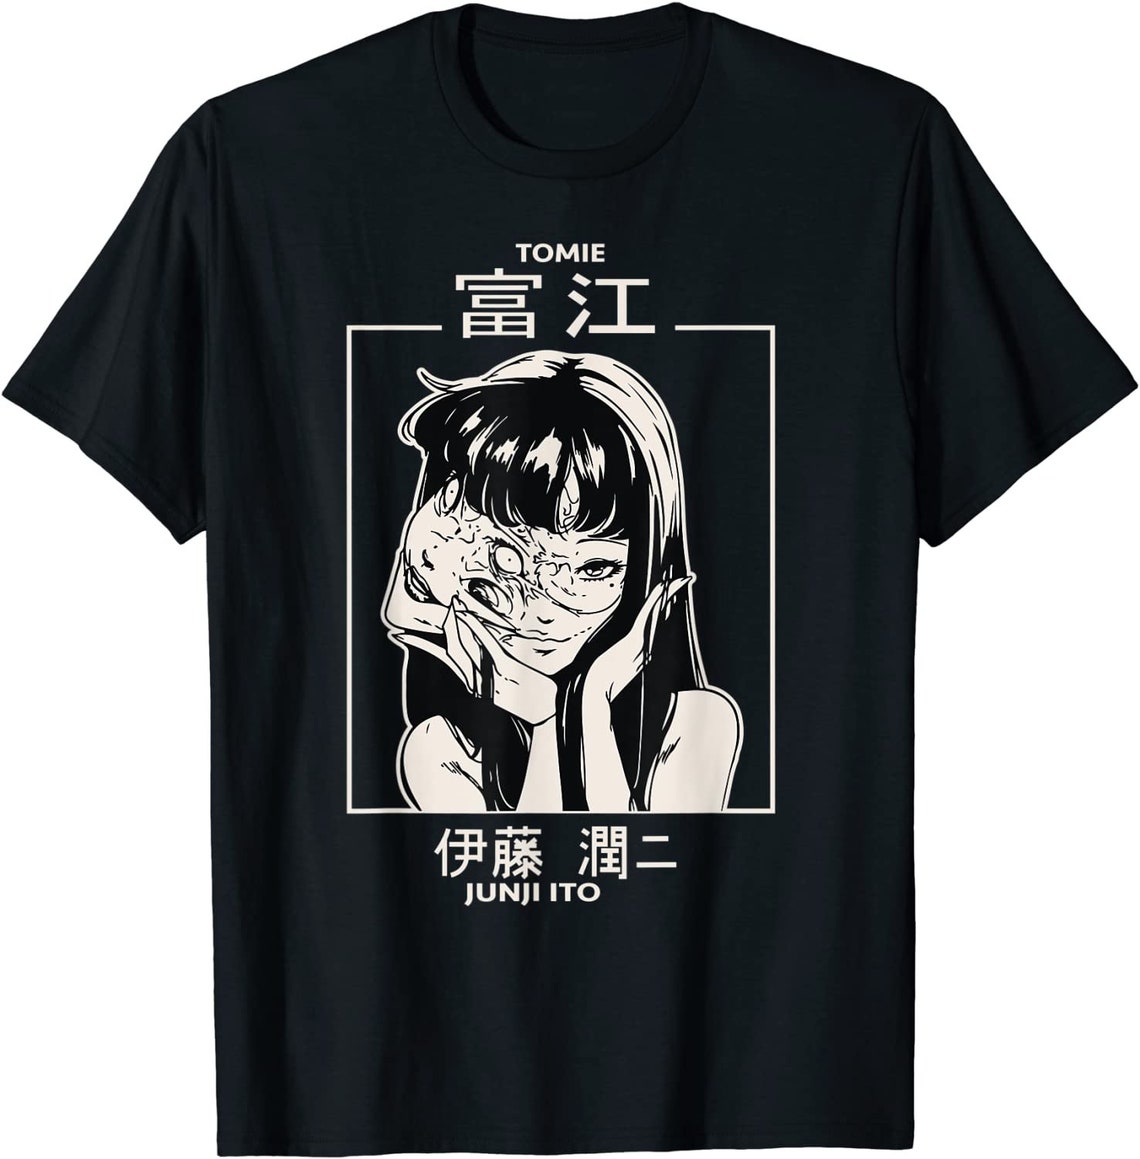 TOMIE JUNJI ITO T-Shirt Anime Graphic Art T Shirt My Hero | Etsy